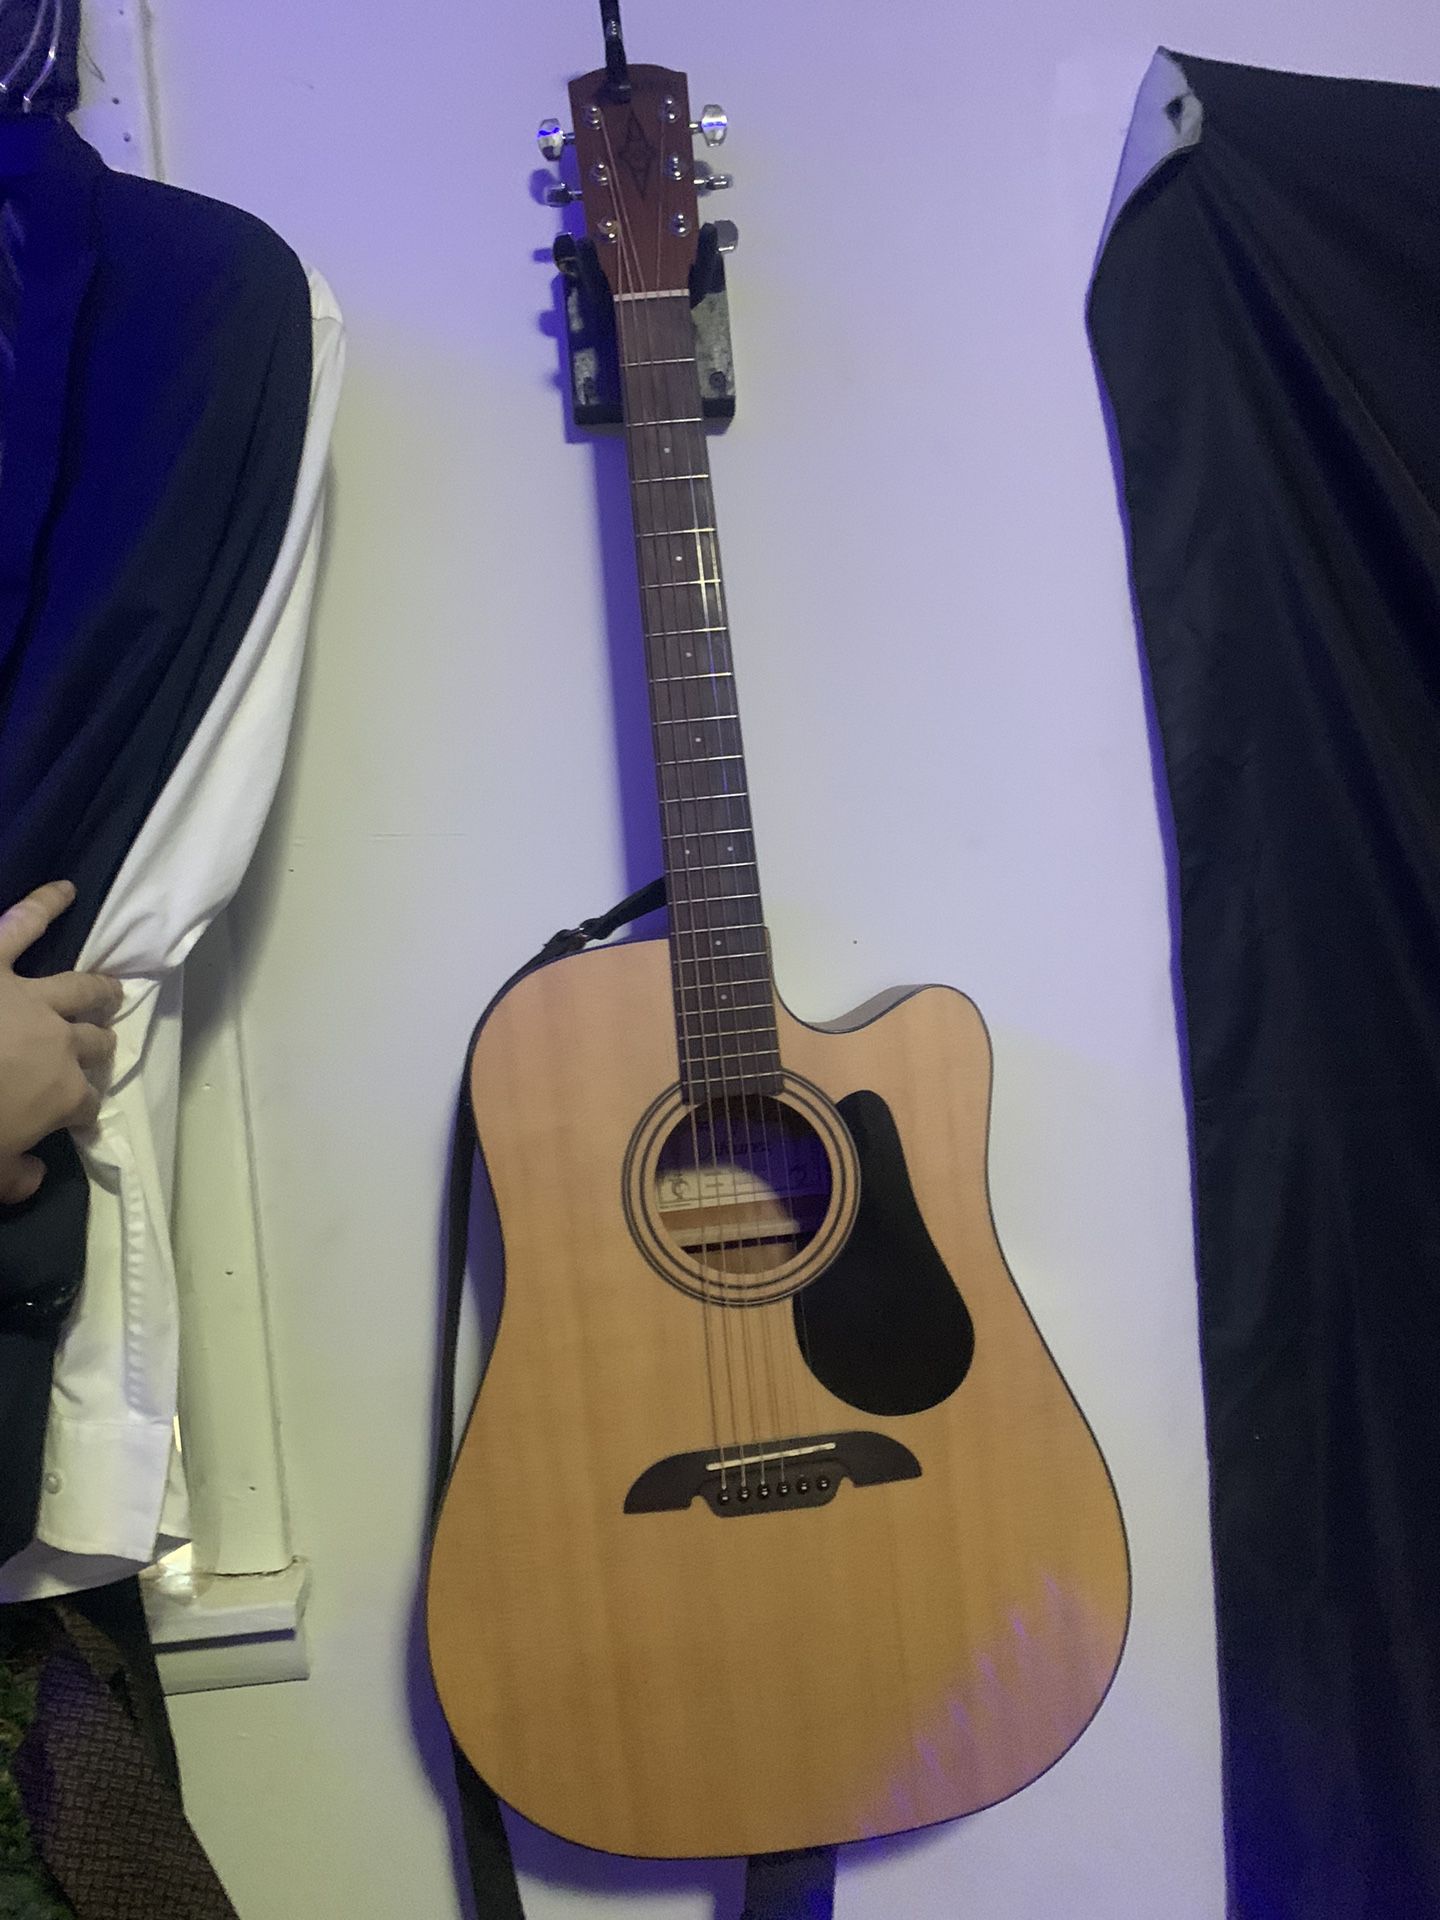 Alvarez Acoustic-Electric Guitar